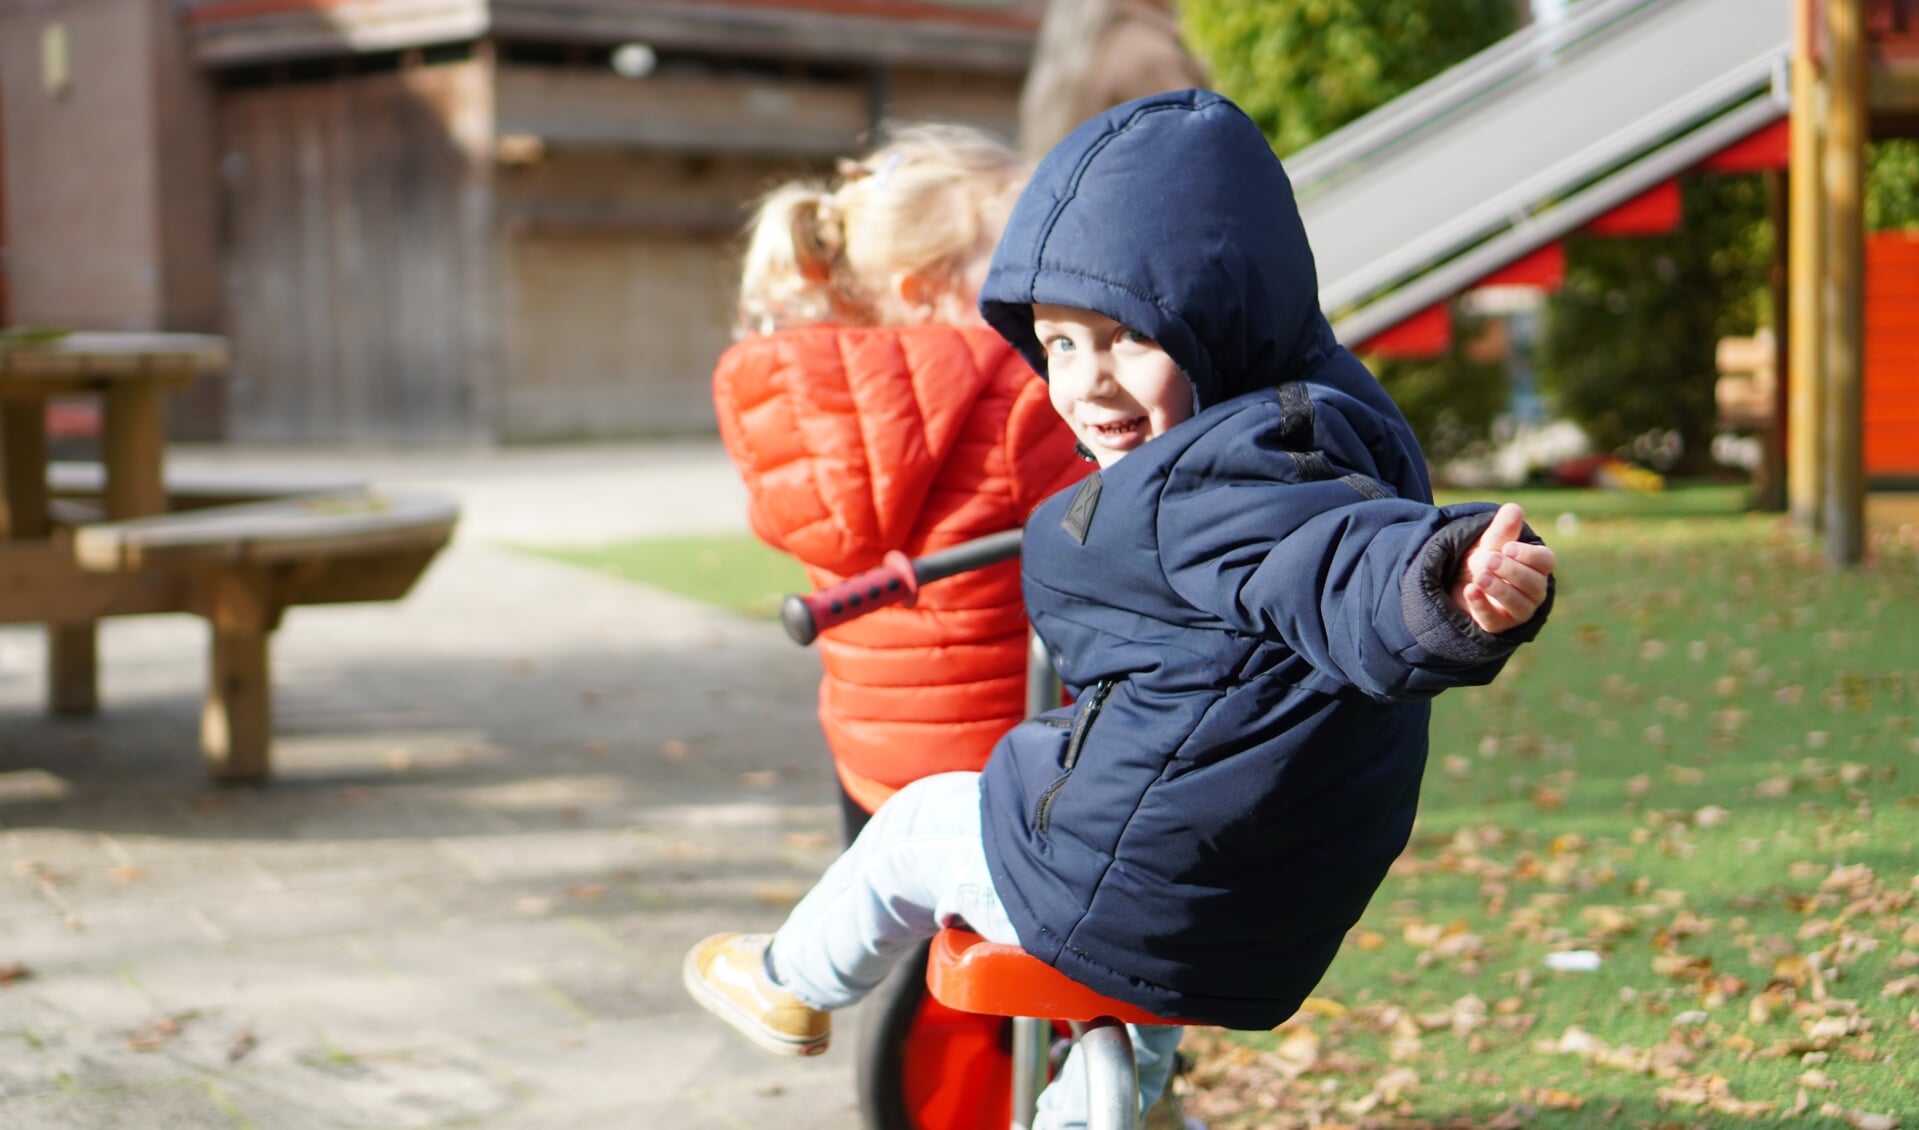 Peutergym draagt bij aan de motorische en cognitieve ontwikkeling van jonge kinderen. Kom ook kennismaken met deze nieuwe activiteit.